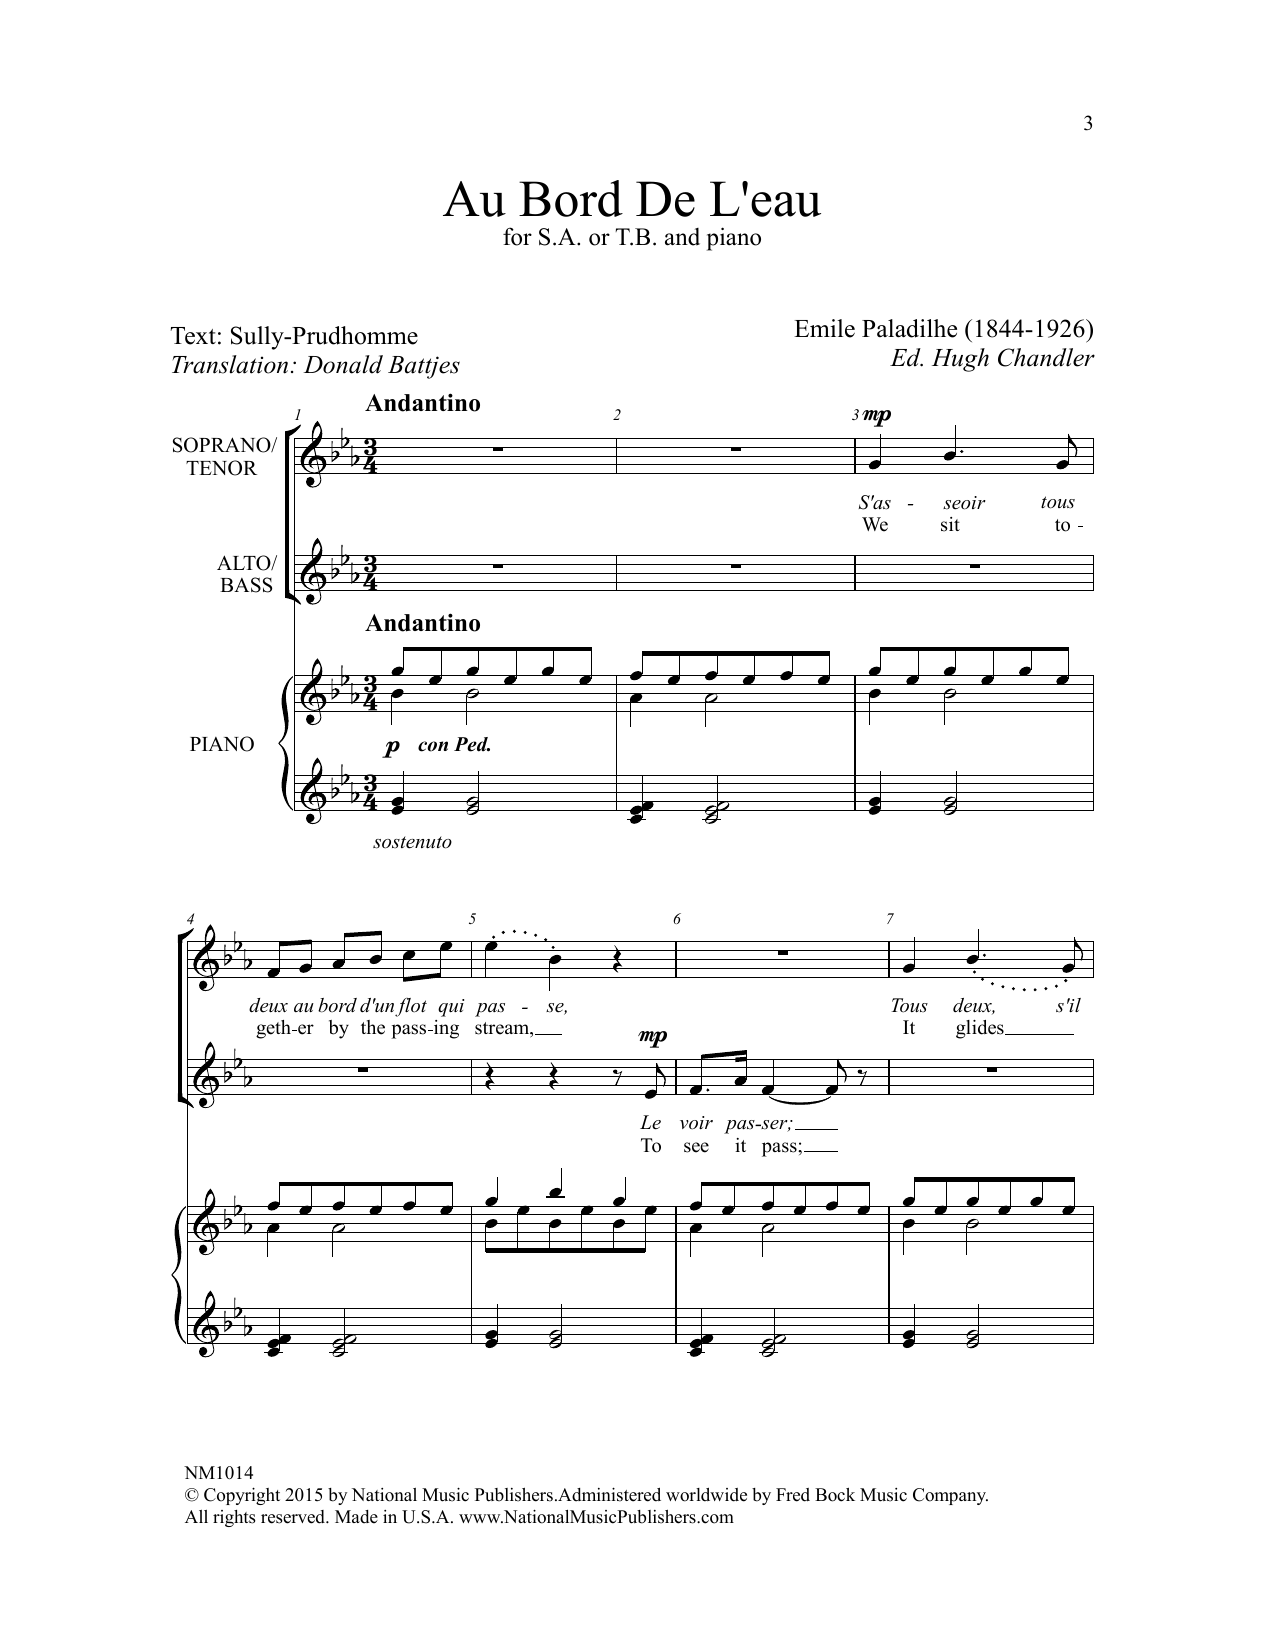 Emile Paladilhe Au Bord De L'eau (ed. Hugh Chandler) sheet music notes and chords arranged for 2-Part Choir